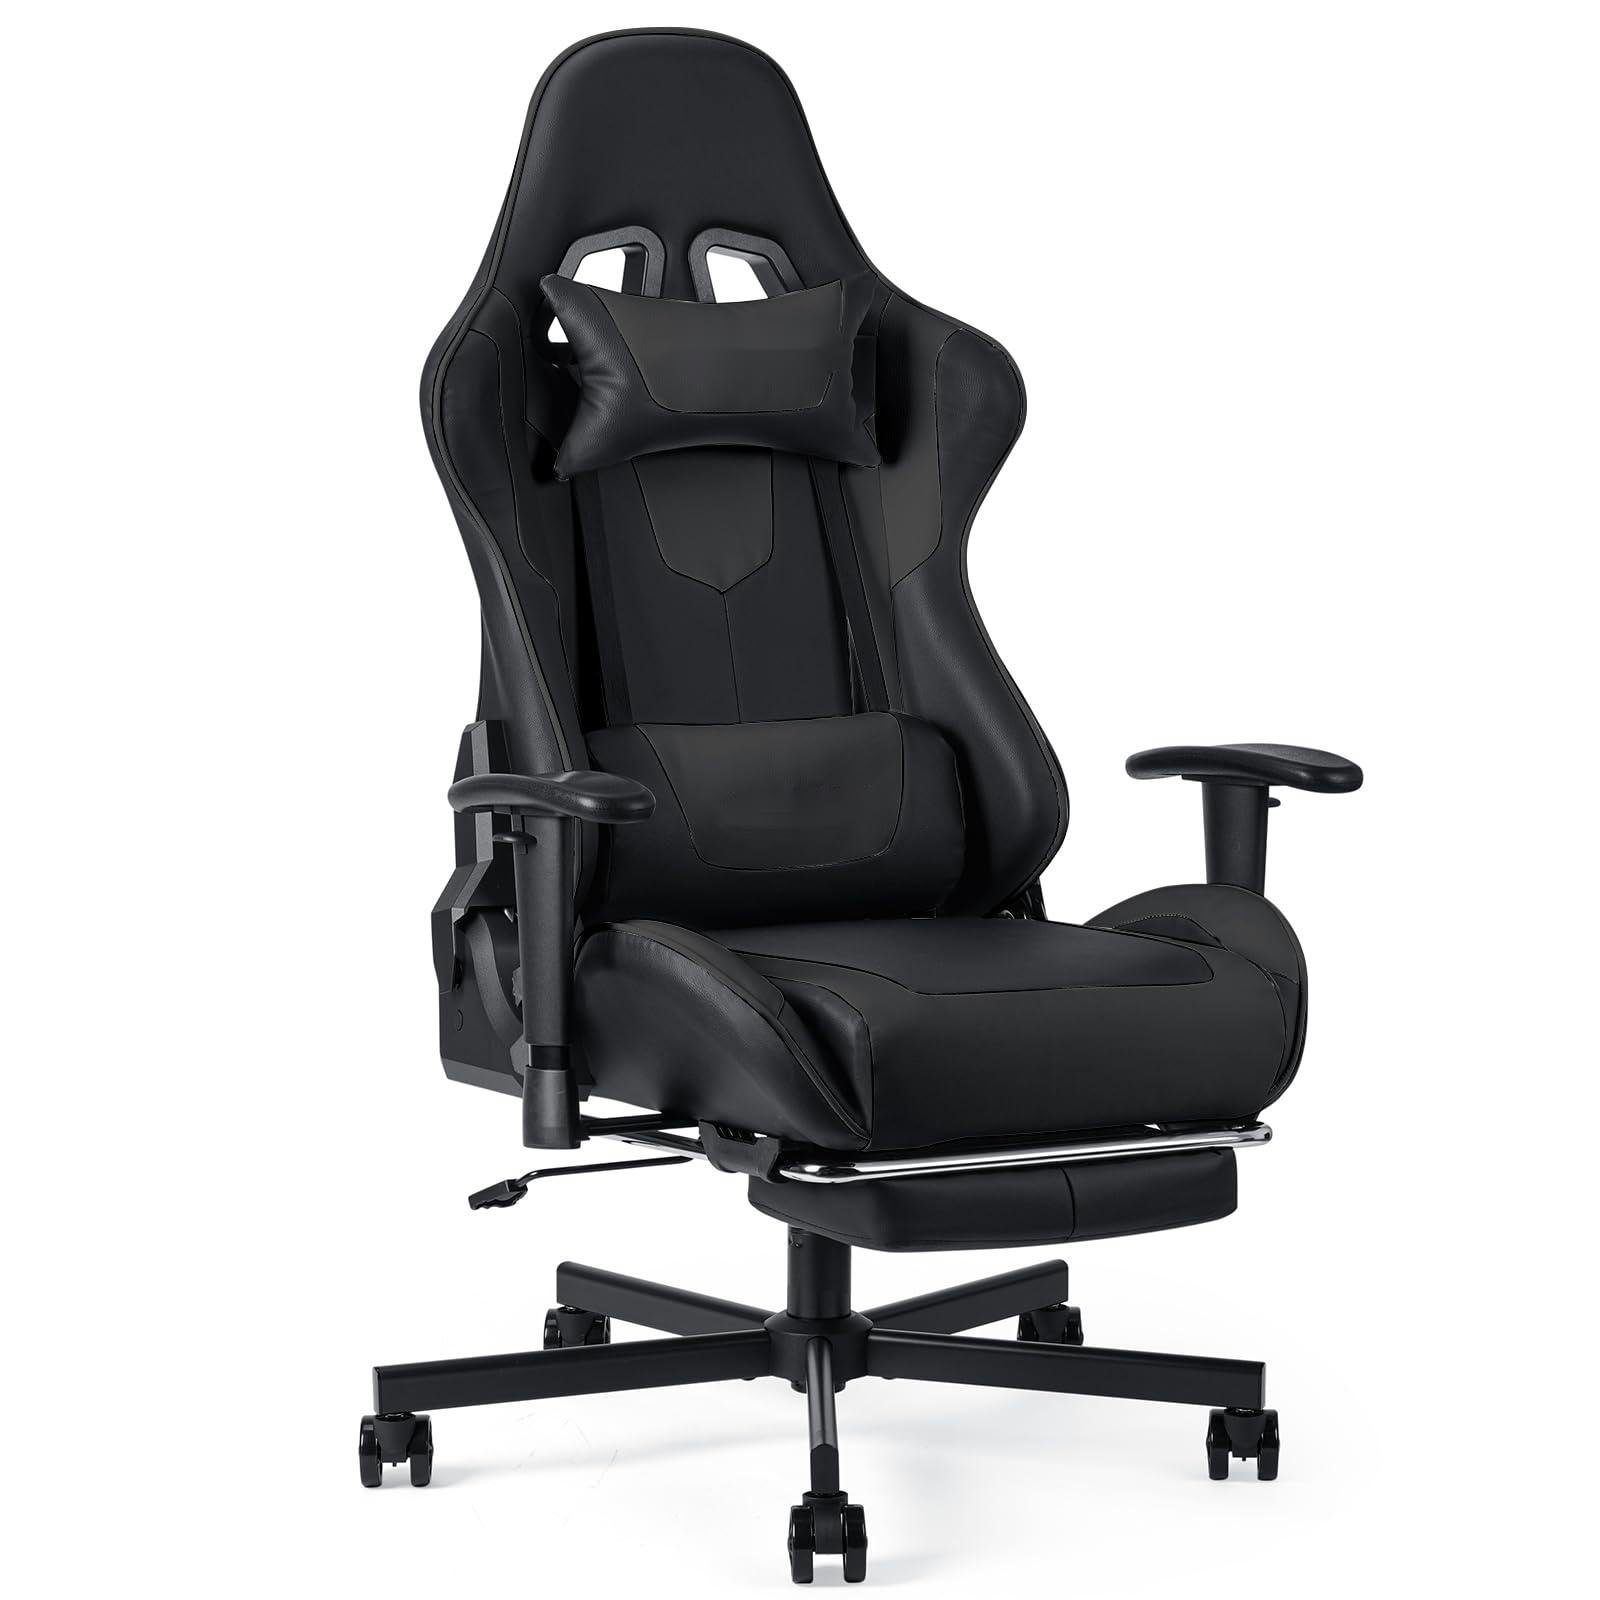 Fangqi Gaming Chair Gaming-Stuhl mit Fußstütze, ergonomischer Bürostuhl (Armlehnen, Sitzhöhe verstellbar, Neigungswinkel der Rückenlehne verstellbar, 360° drehbar, Nackenkissen, Lendenkissen) | Stühle